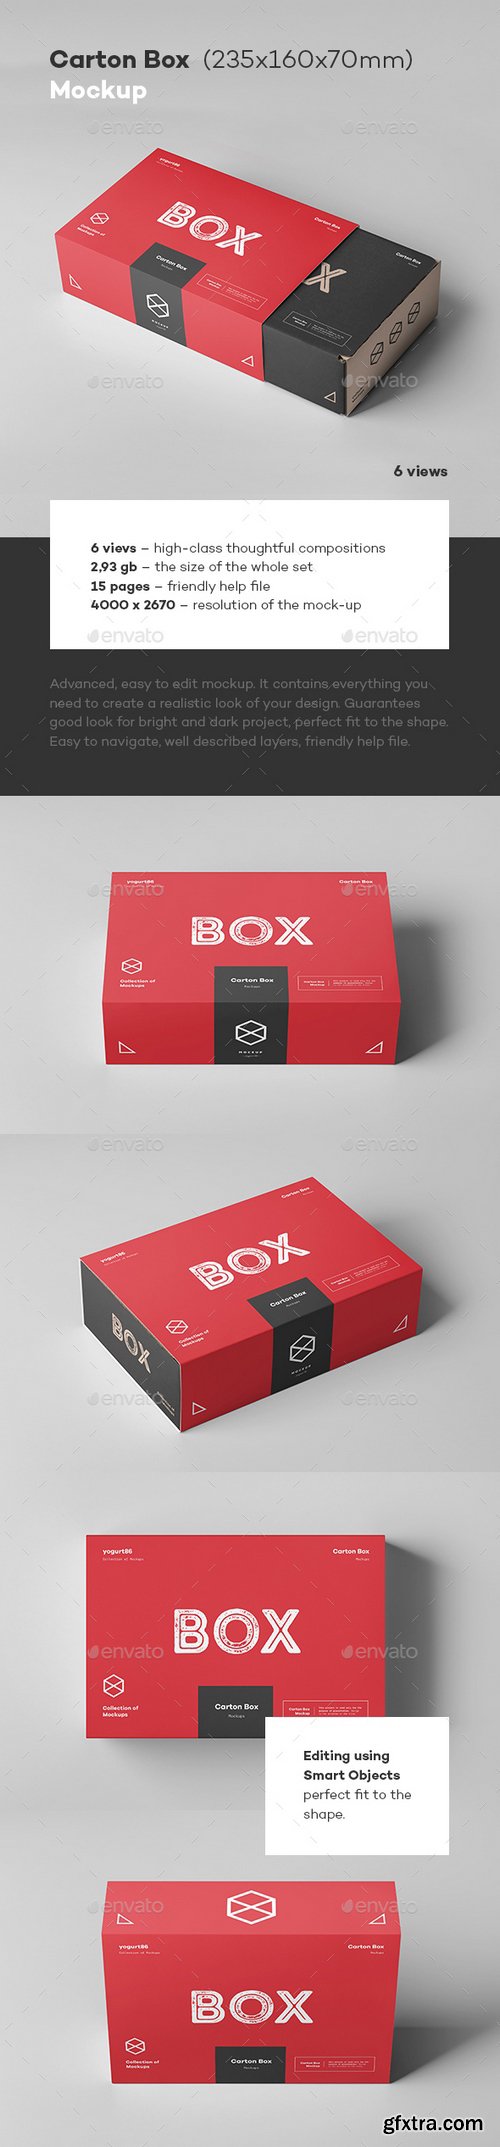 Graphicriver - Carton Box Mock-up 235x160x70 & Wrapper 22865162